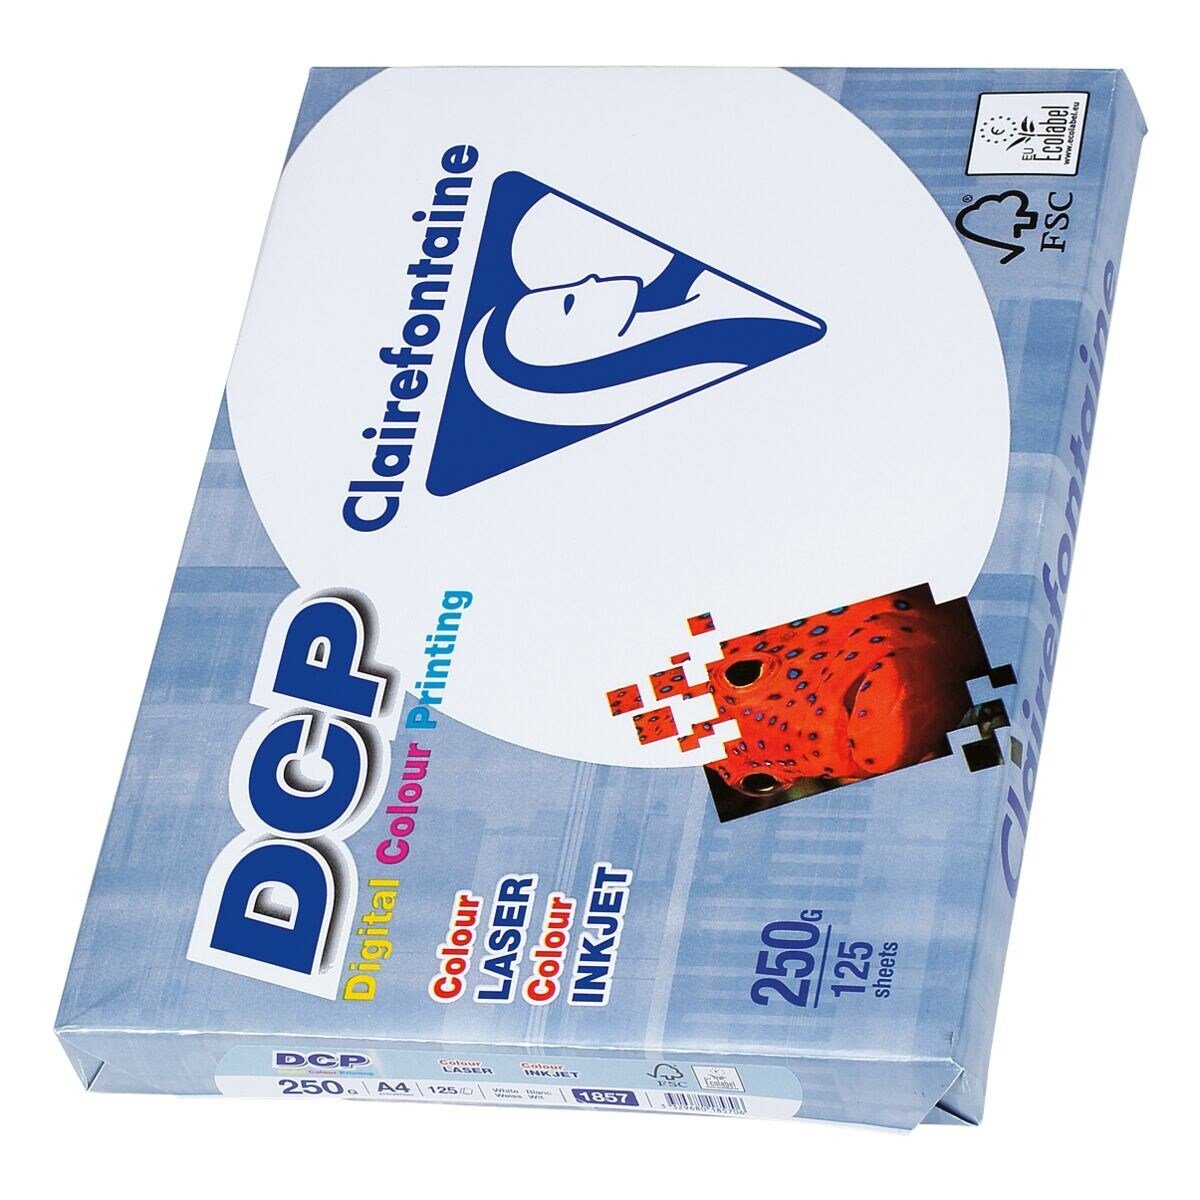 CLAIREFONTAINE Farblaser-Druckerpapier A4, 172 DIN 125 250 Format Blatt DCP, CIE, g/m²